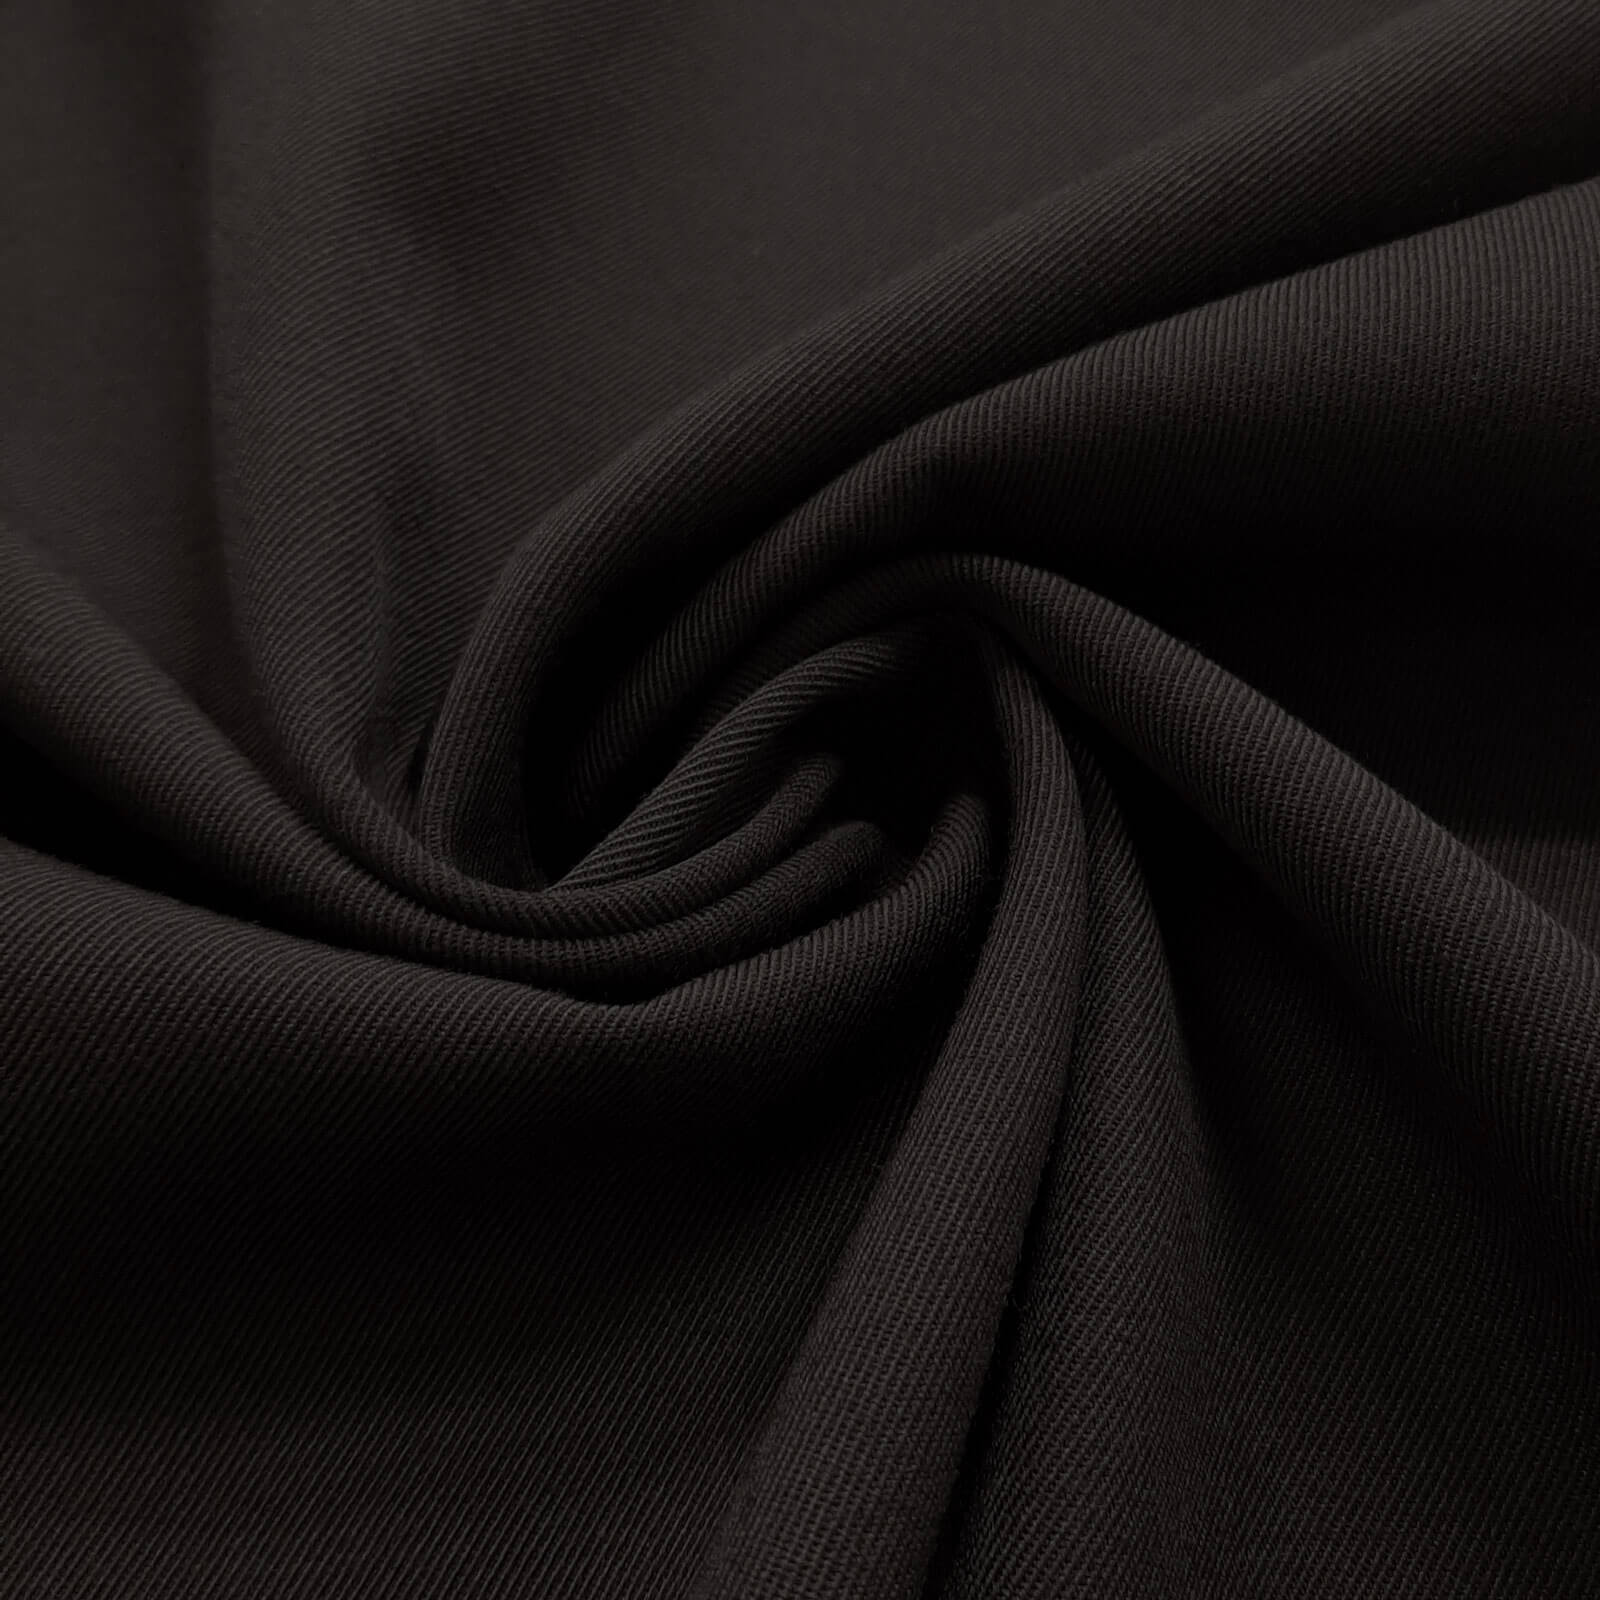 Frisko - Drap de laine 100% laine vierge / Drap d'uniforme - Noir 